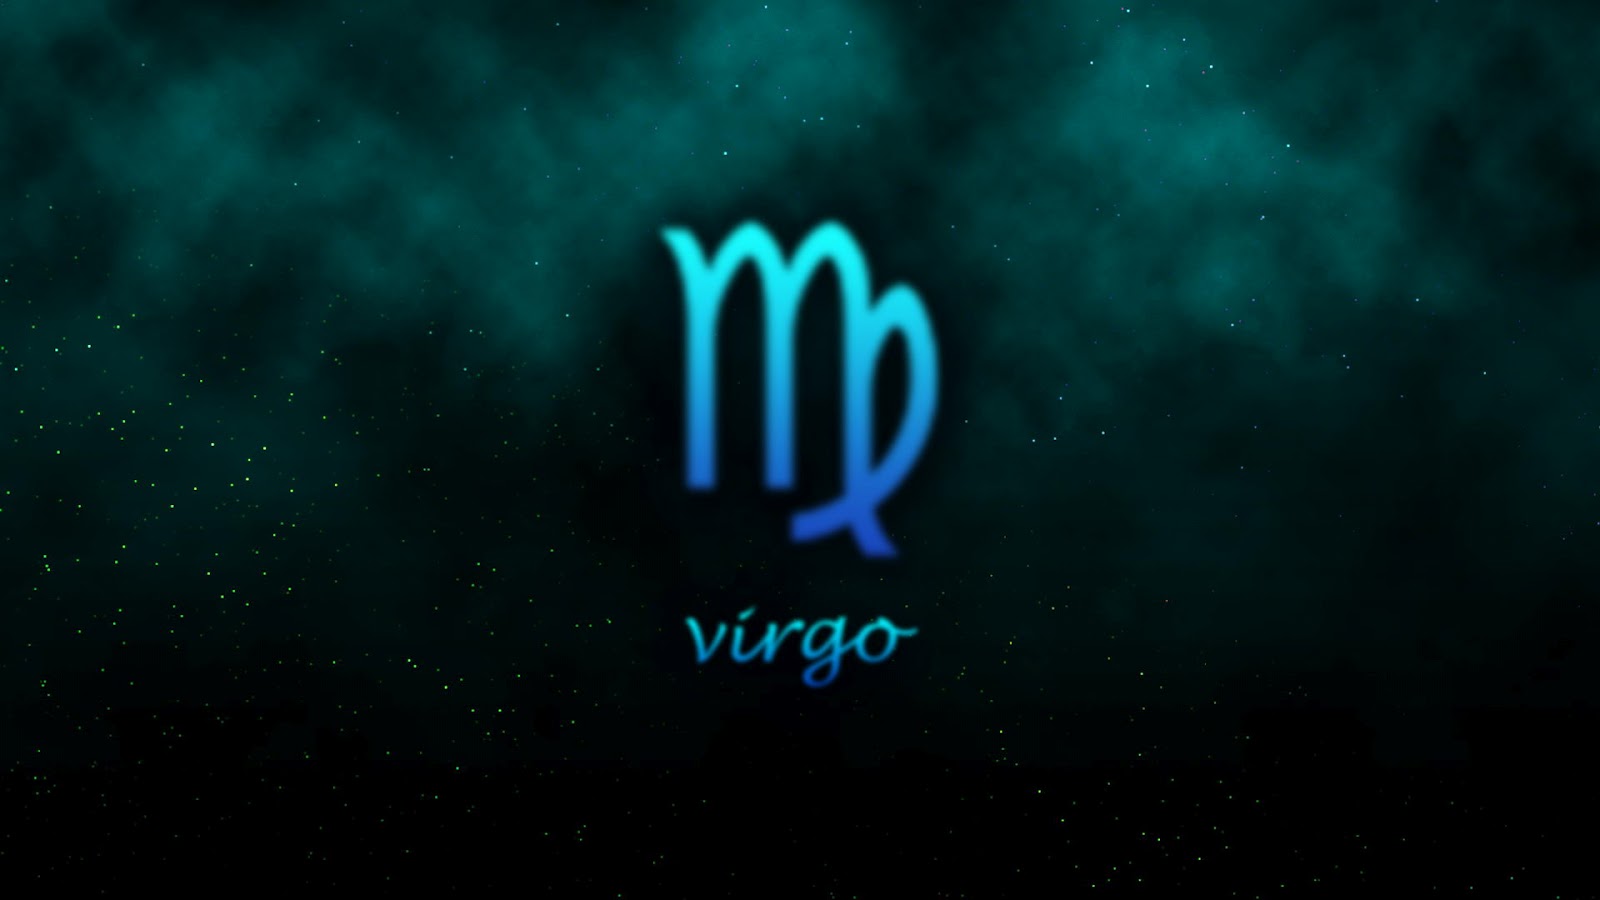 Virgo Wallpaper: Virgo là một trong những chòm sao nổi tiếng và được yêu thích nhất. Nếu bạn là người thuộc chòm sao này, hãy xem các hình nền Virgo để tìm kiếm những bức ảnh tuyệt đẹp và đầy cảm hứng. Các hình nền Virgo sẽ giúp mang lại sự thoải mái, thư thái và hạnh phúc cho bạn.